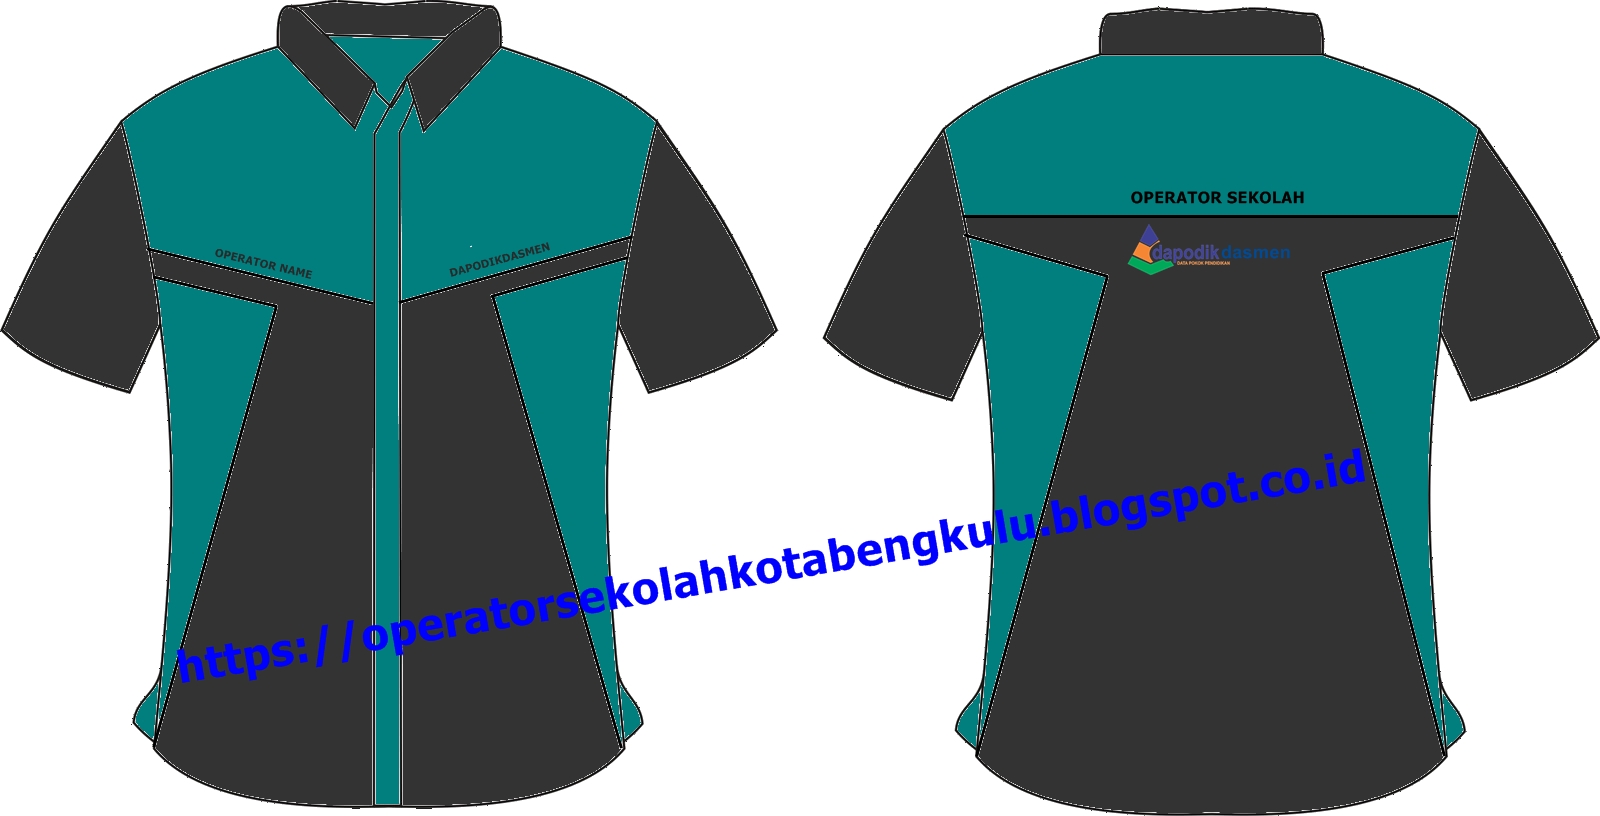 Download Desain Baju  Operator  Sekolah  Desaprojek